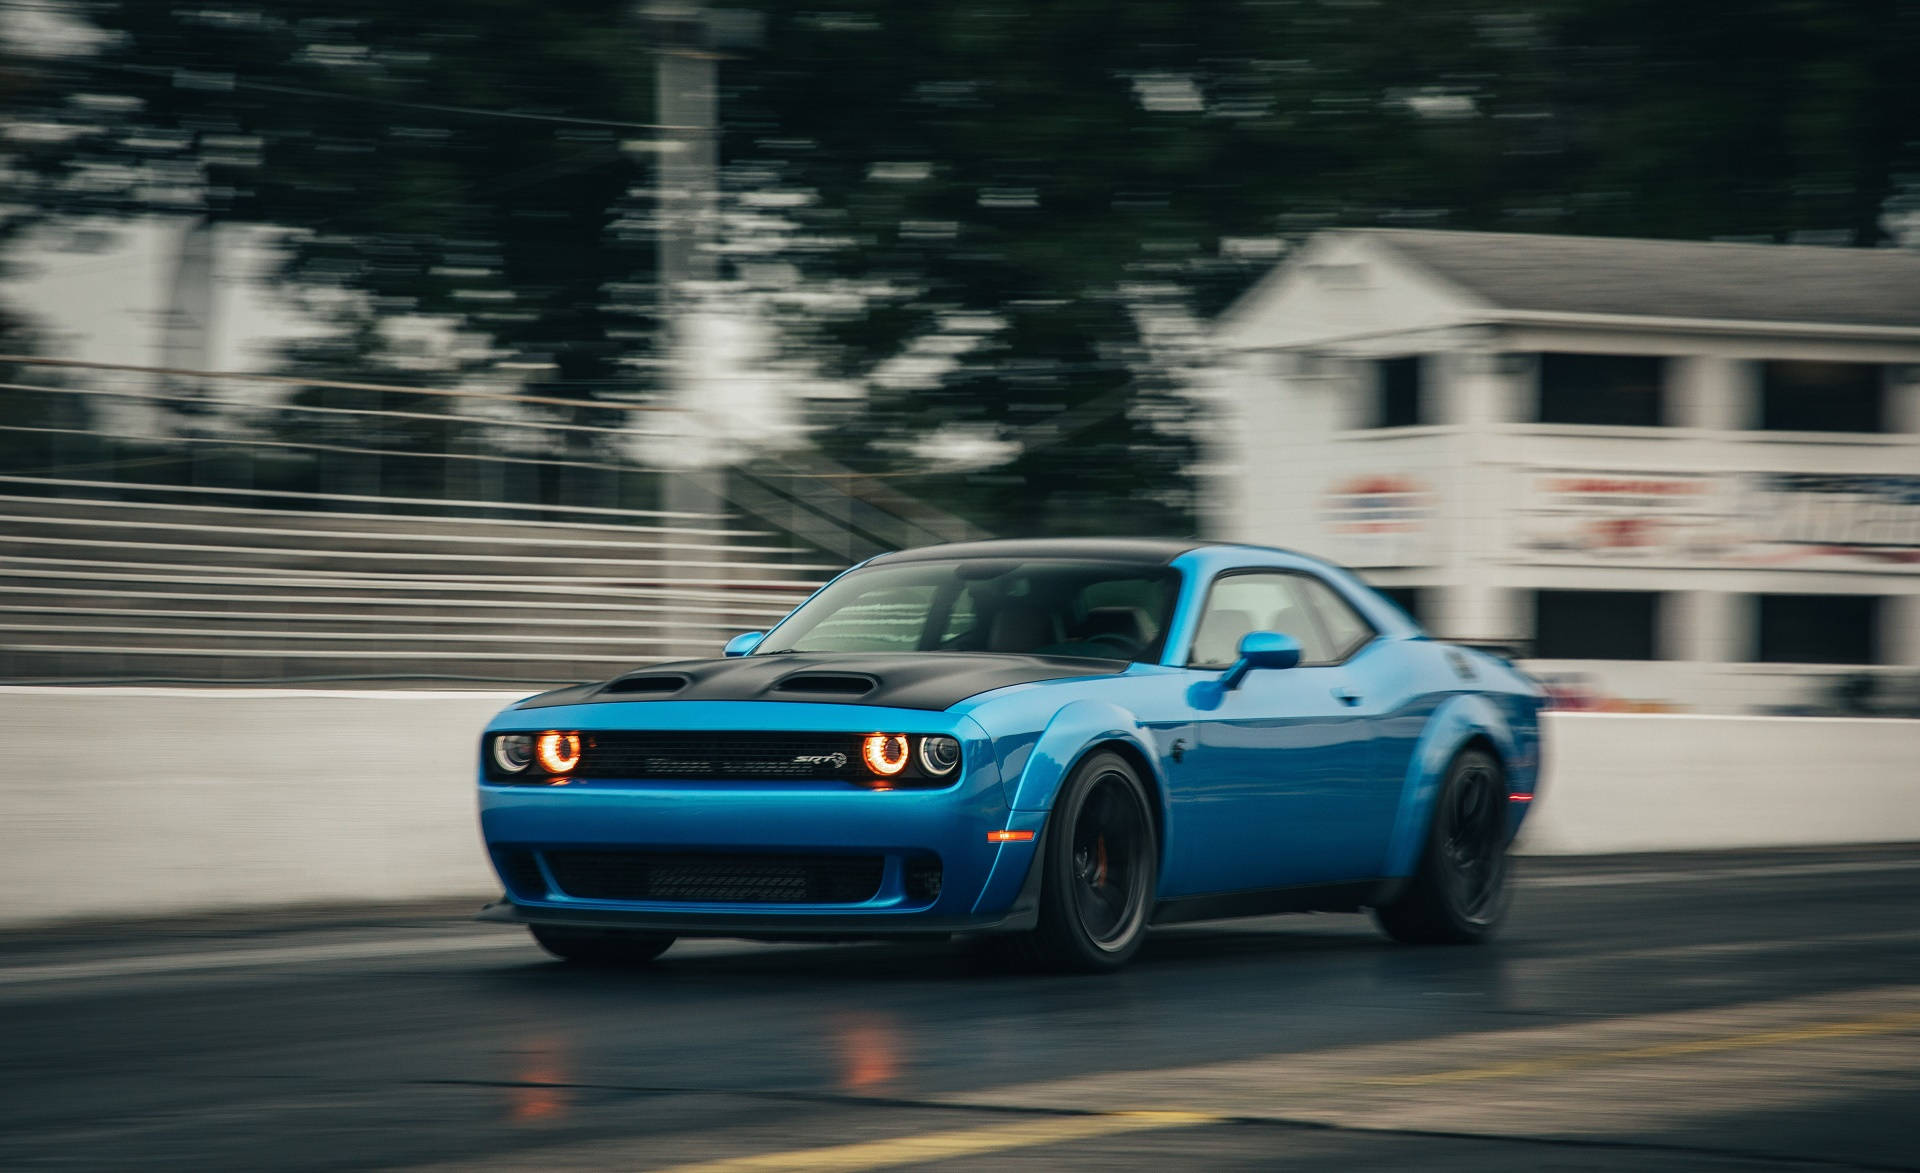 A Speeding Blue Dodge Challenger Wallpaper